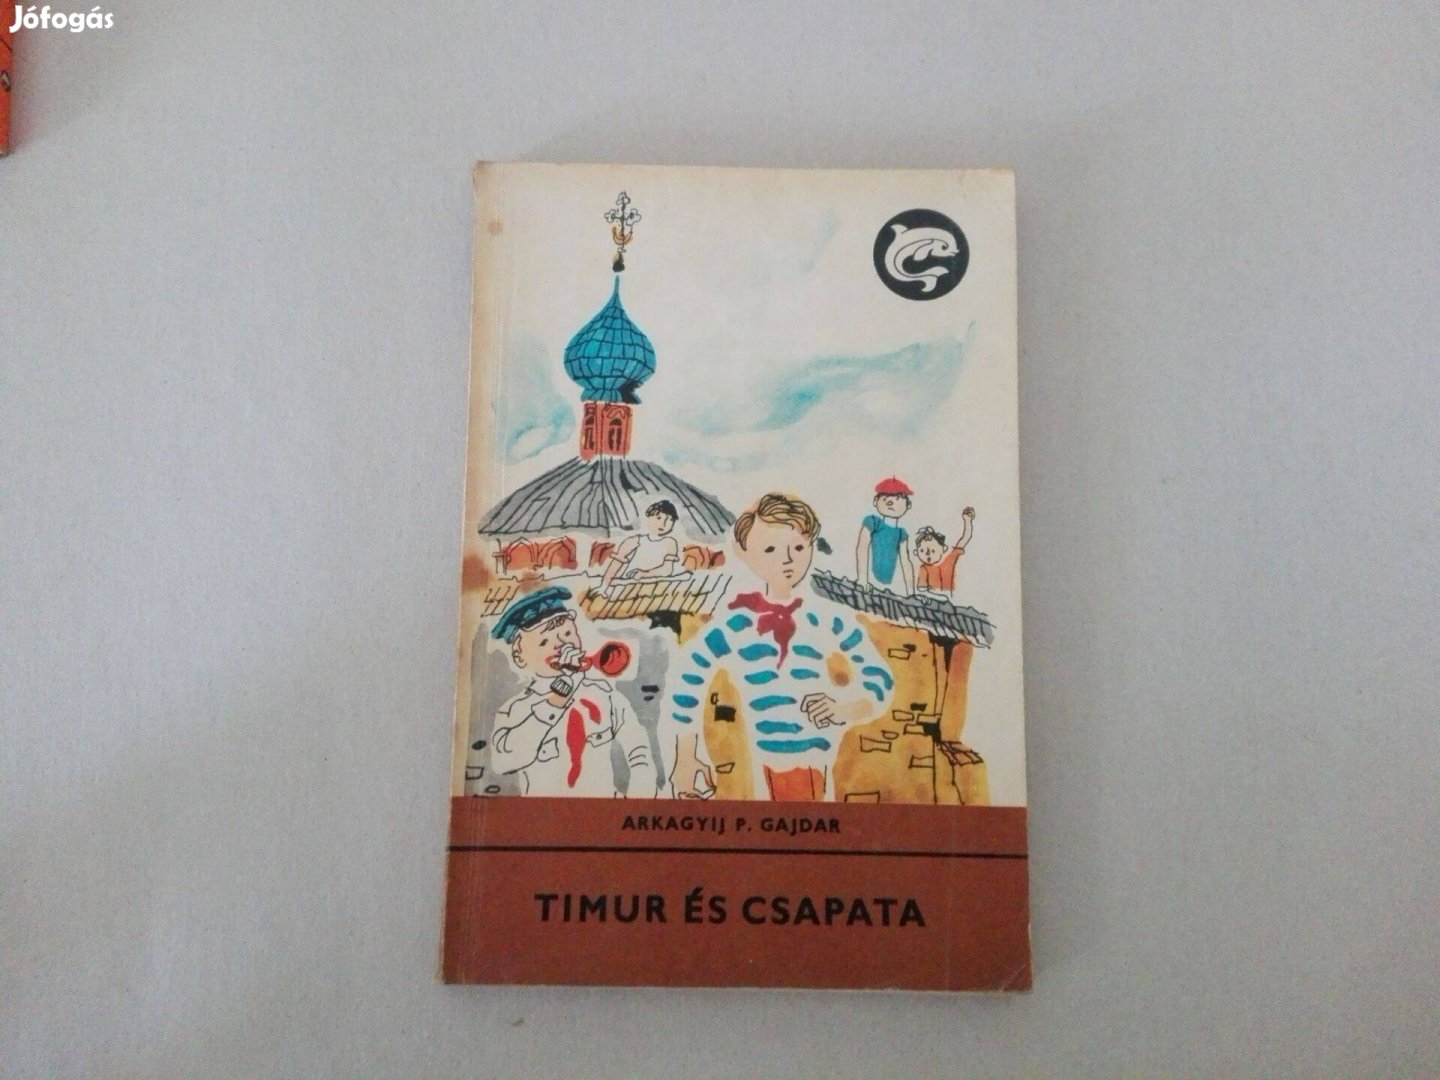 Gajdár Arkagyij P.: Timur és csapata c.Delfin könyv jó állapotba eladó